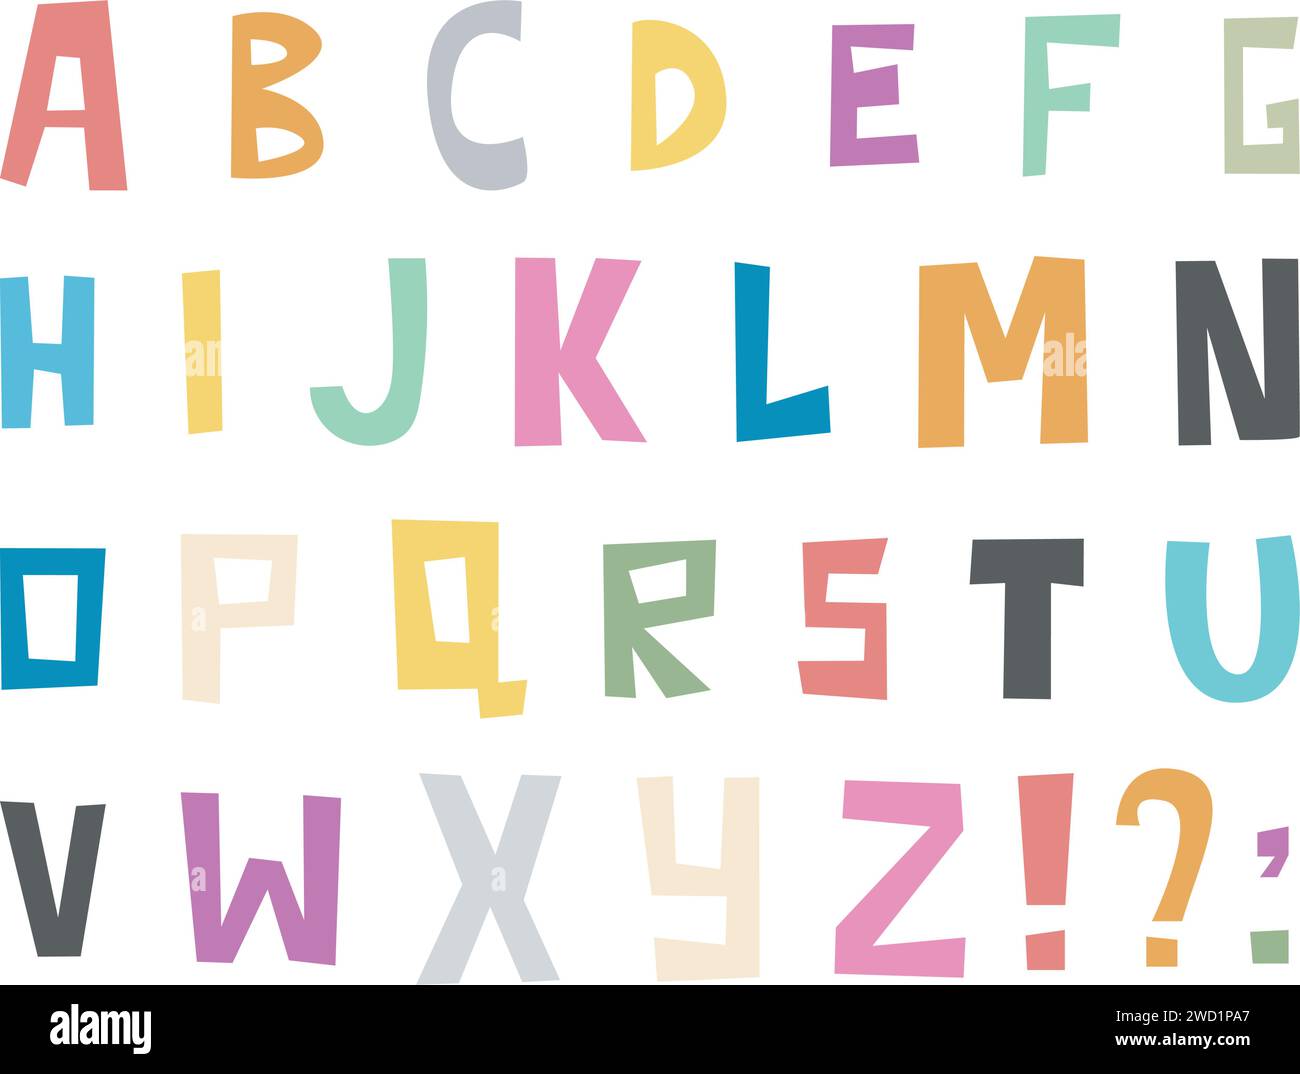 Lettere tagliate casualmente dell'alfabeto inglese Illustrazione Vettoriale